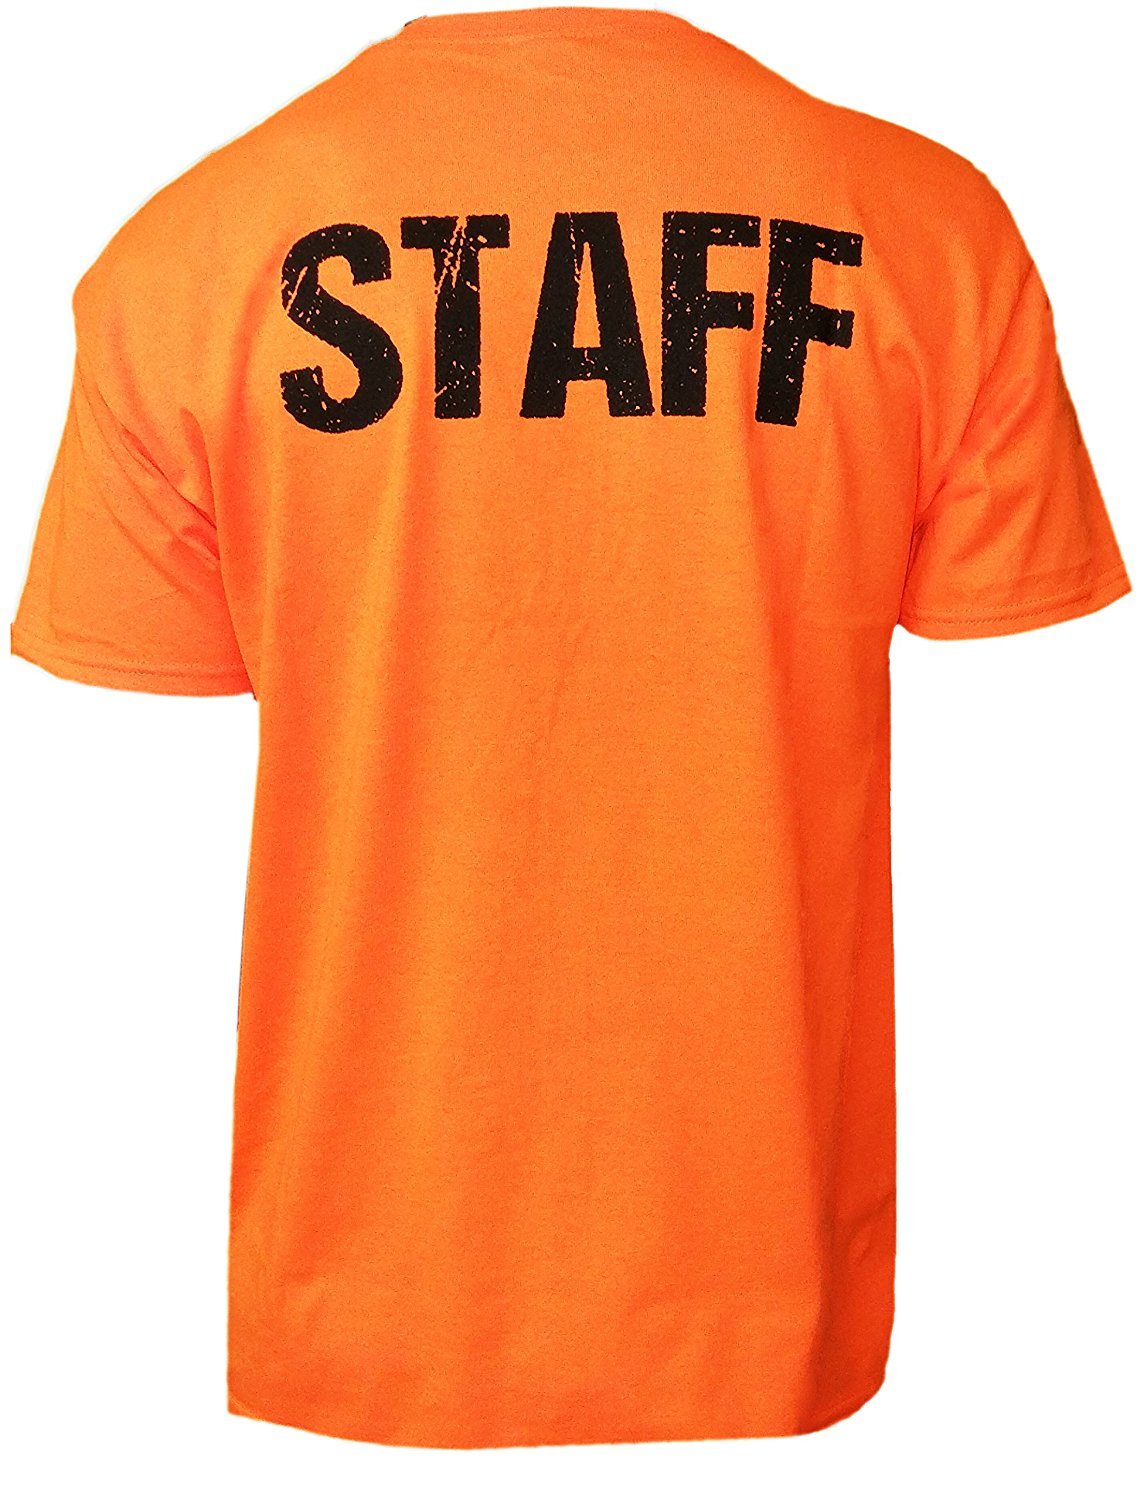 T-shirt orange fluo pour homme avec imprimé devant et dos.